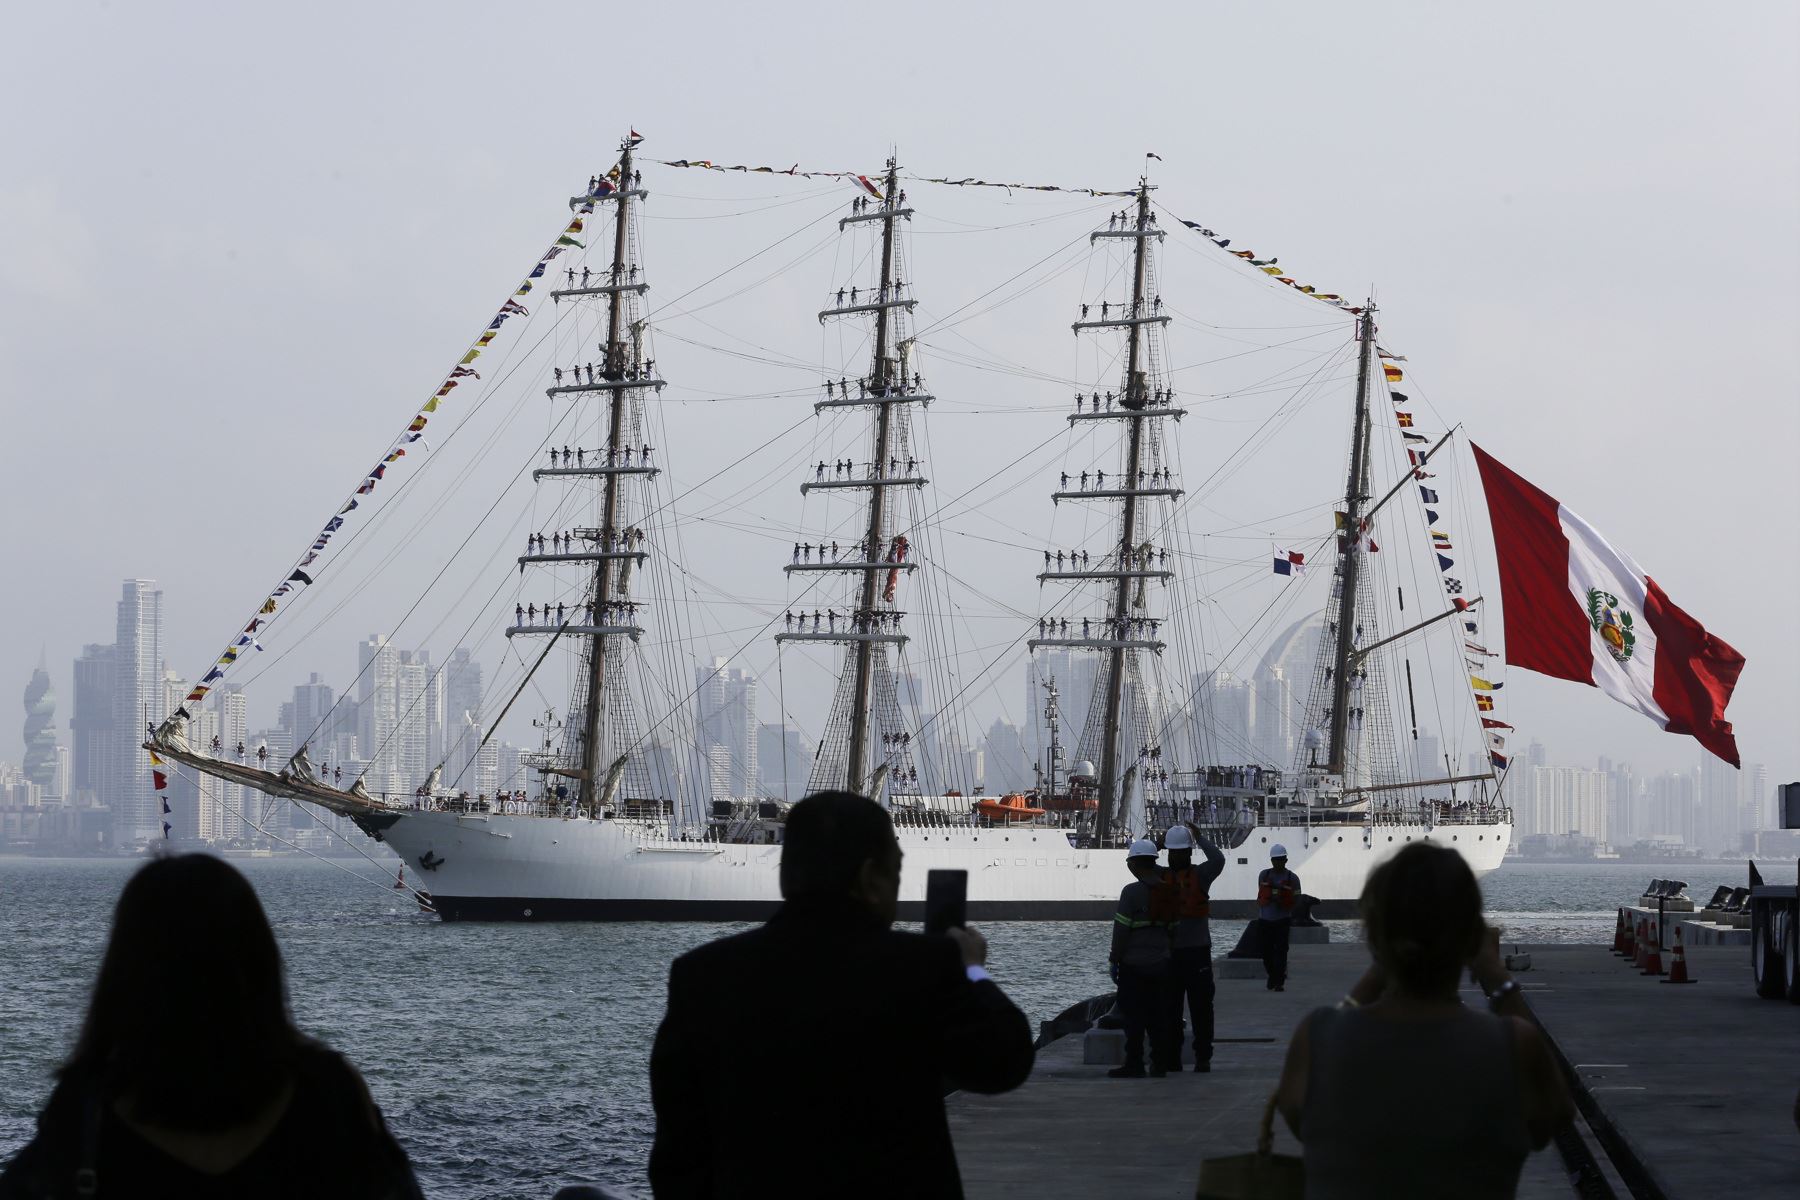 El Buque Unión llegó a Panamá: El último puerto tras dar la vuelta al mundo